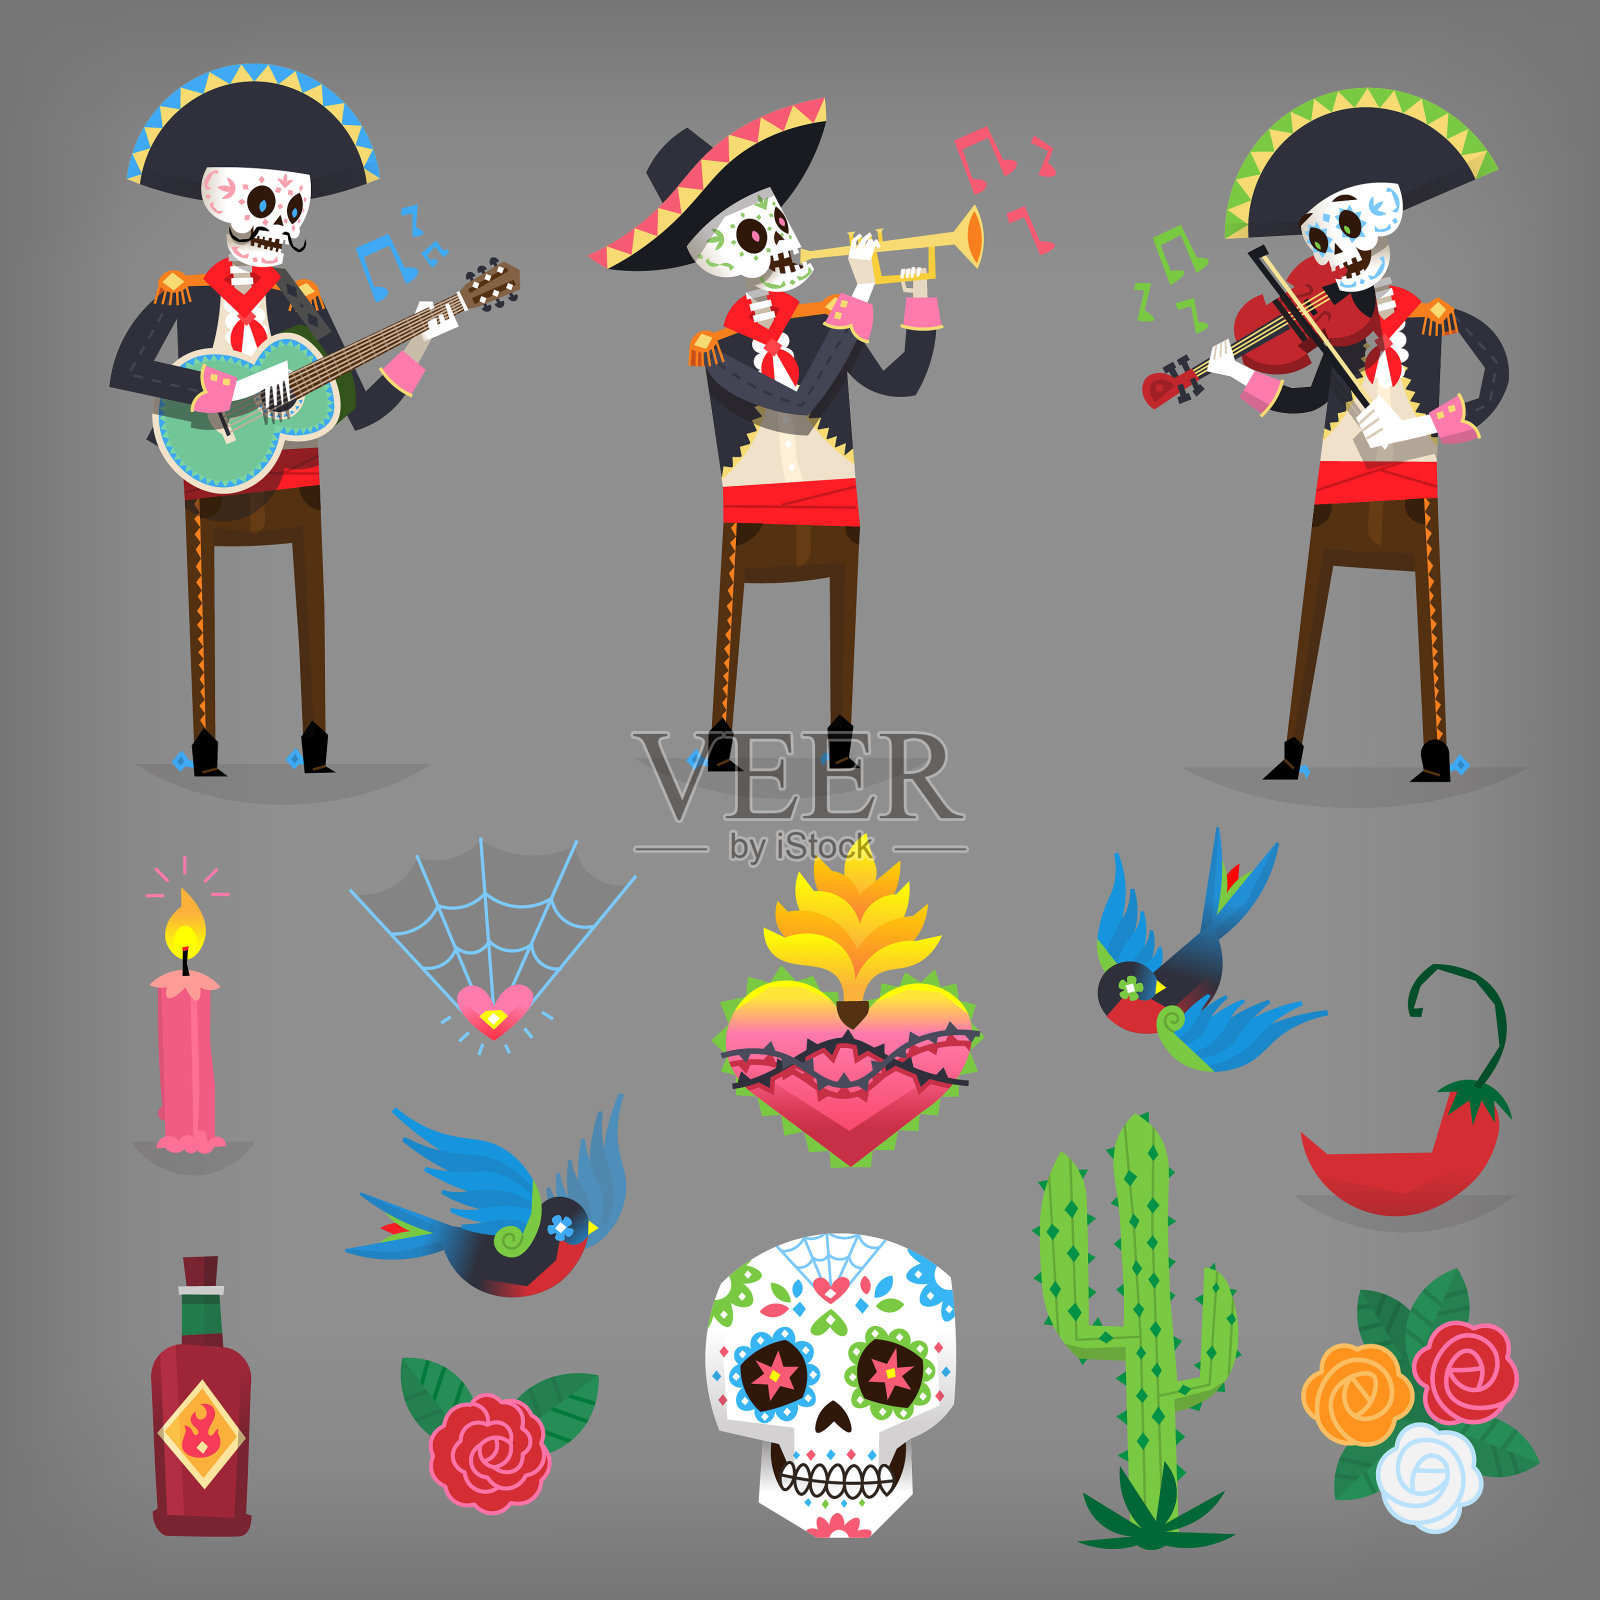 色彩丰富的字符和矢量元素代表死者的日子，传统的秋季墨西哥节日纪念死者。插画图片素材